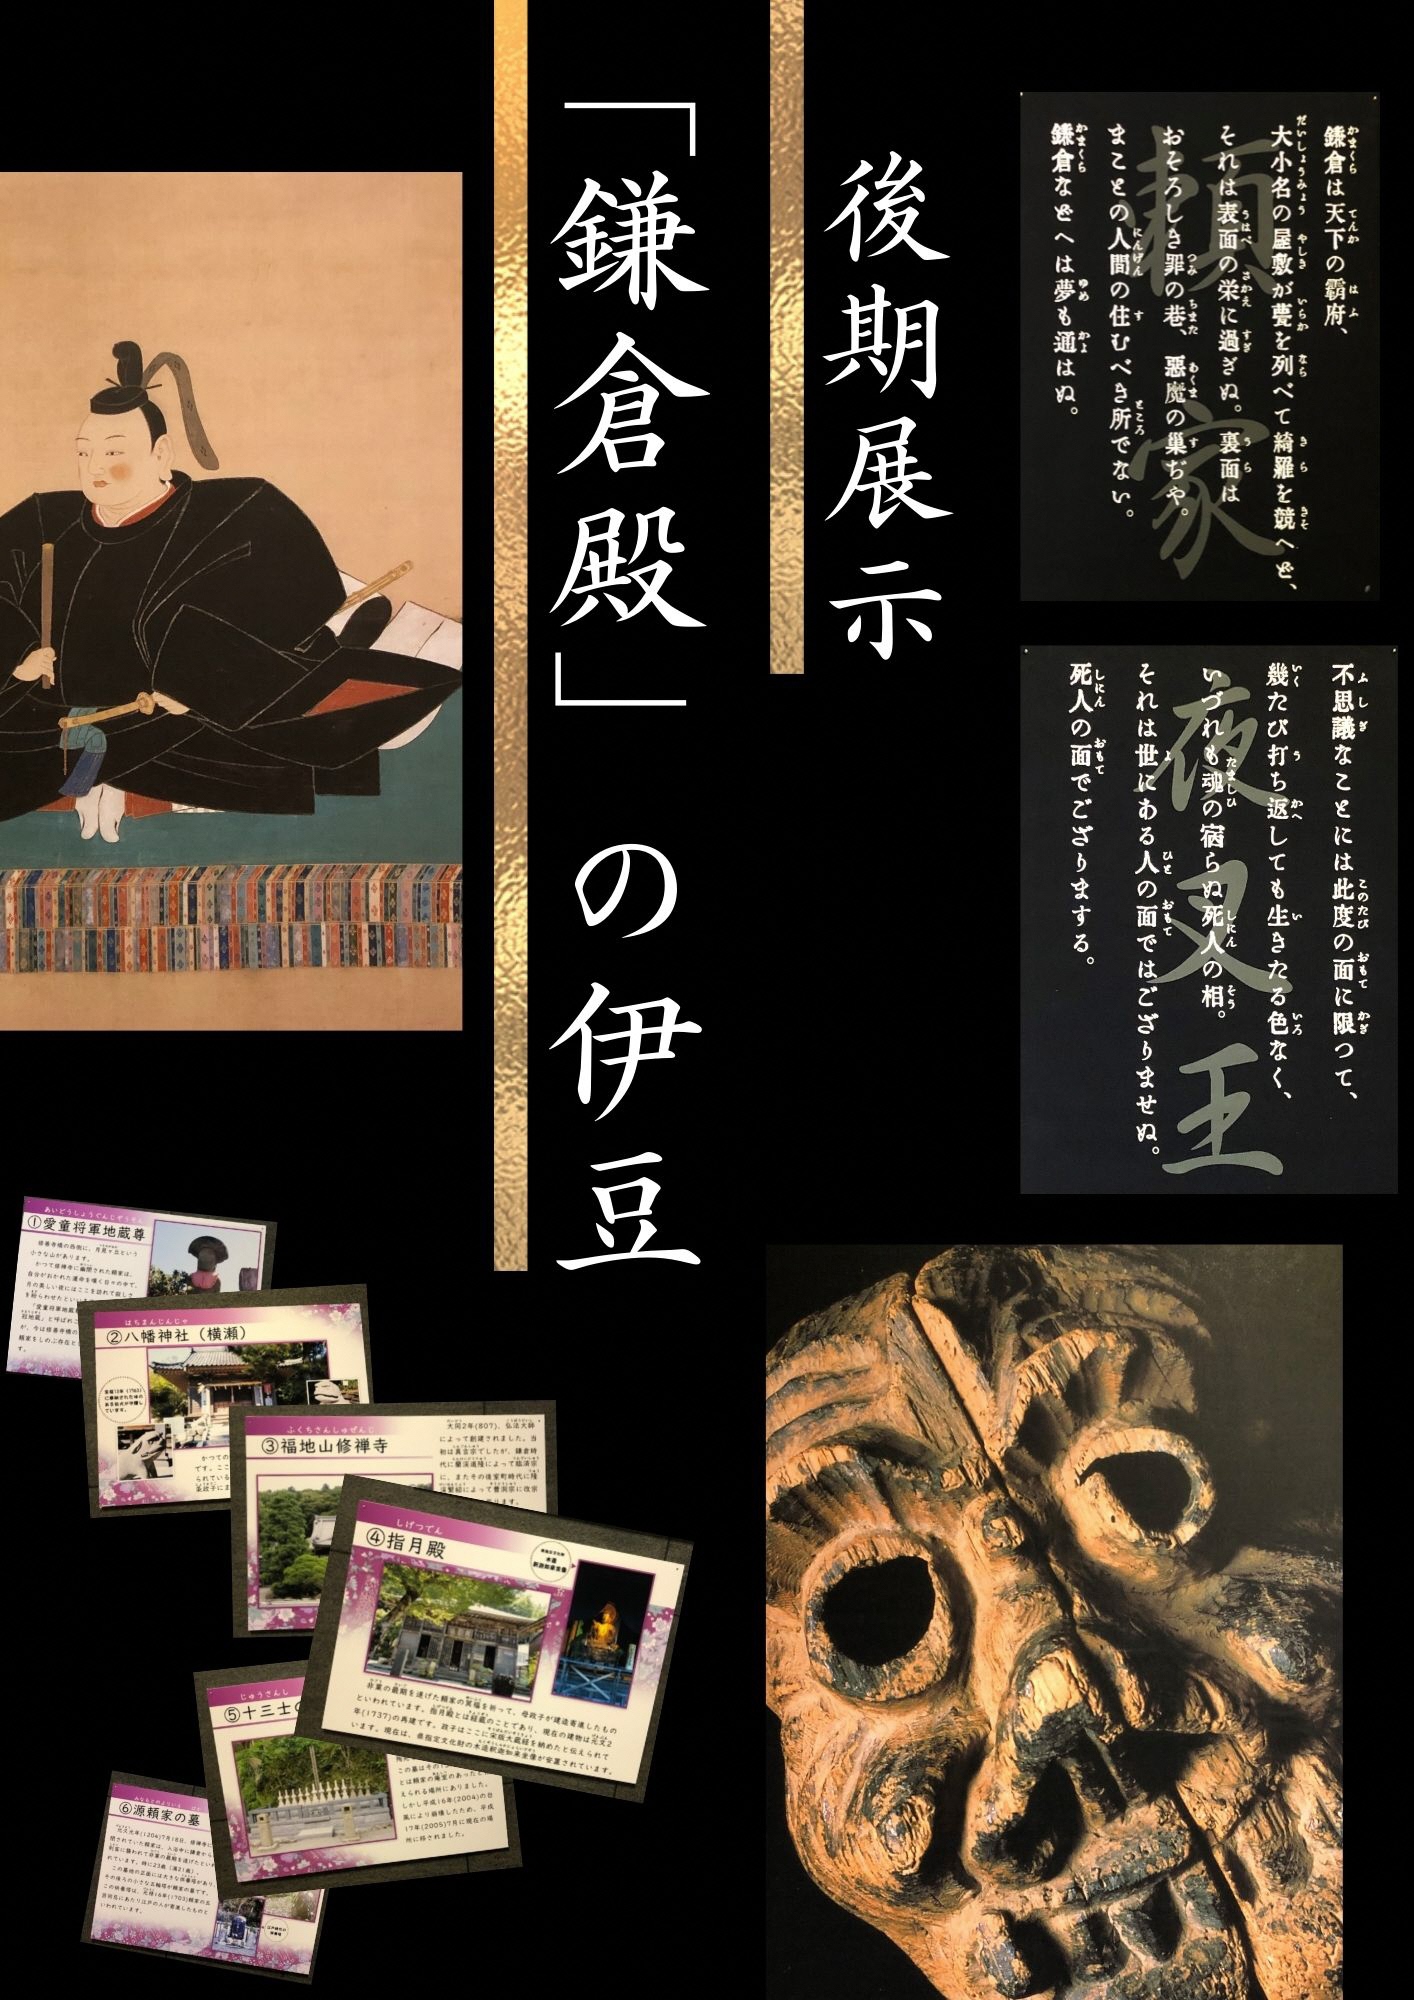 後期展示「鎌倉殿の伊豆」の絵や資料、割れたお面などの展示品のポスター